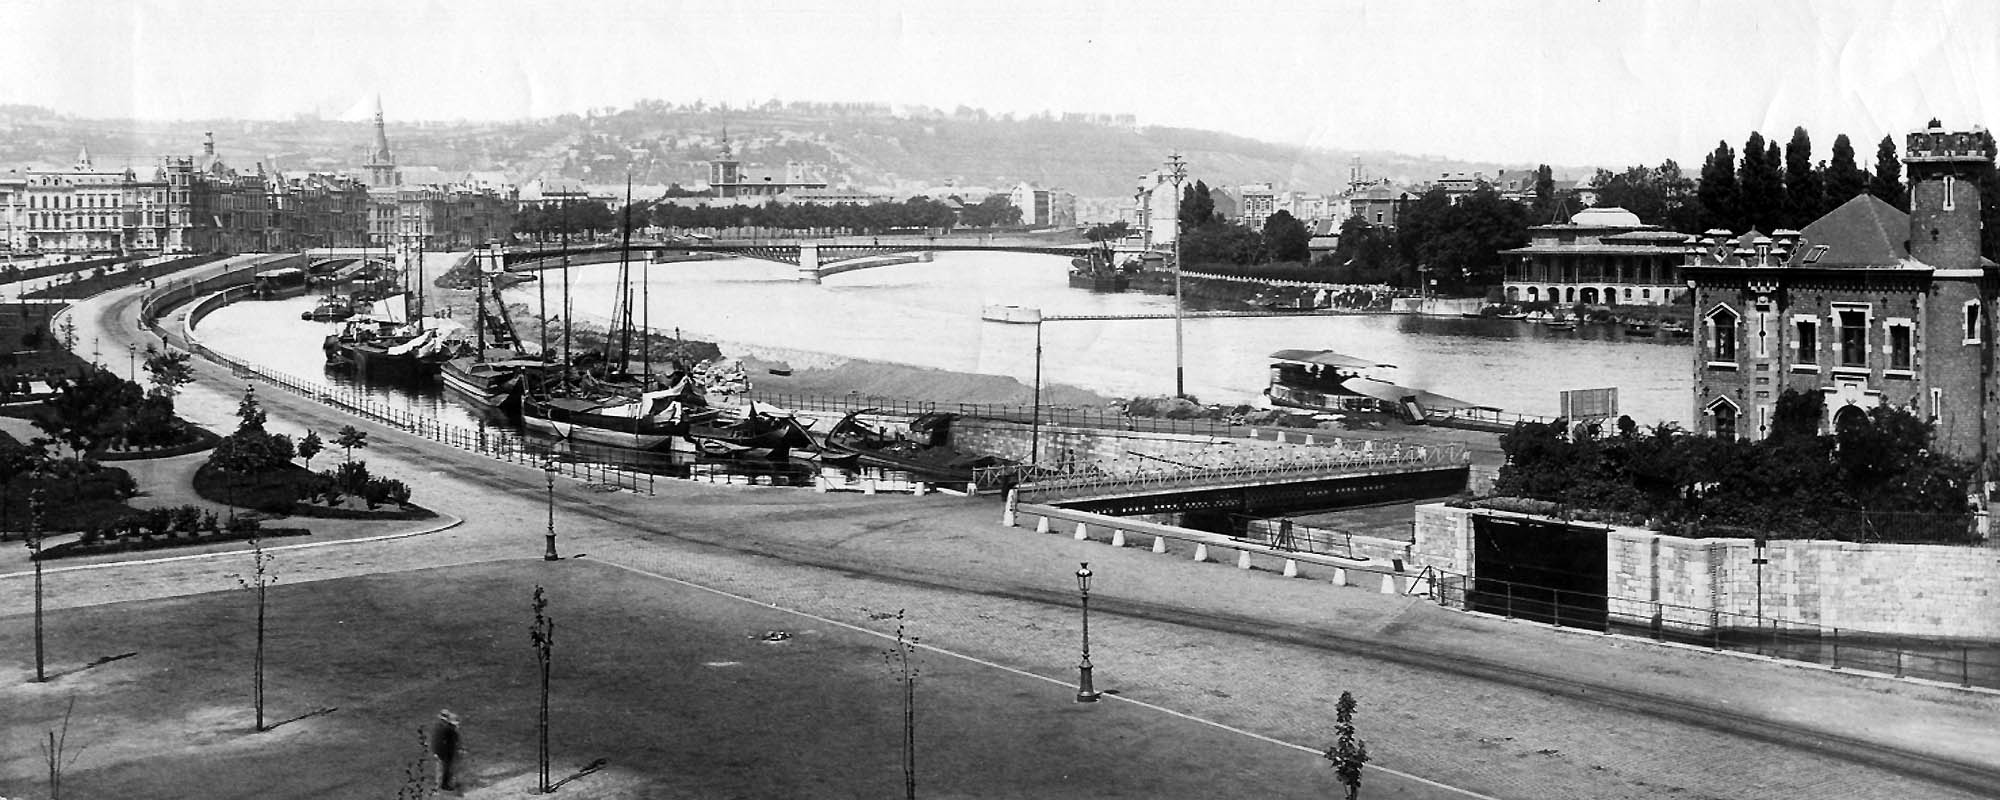 Liege Expo 1930 - Grands travaux - Suppression des écluses entre Chokier et Monsin: ici au niveau du remblais de l'Heliport de liège